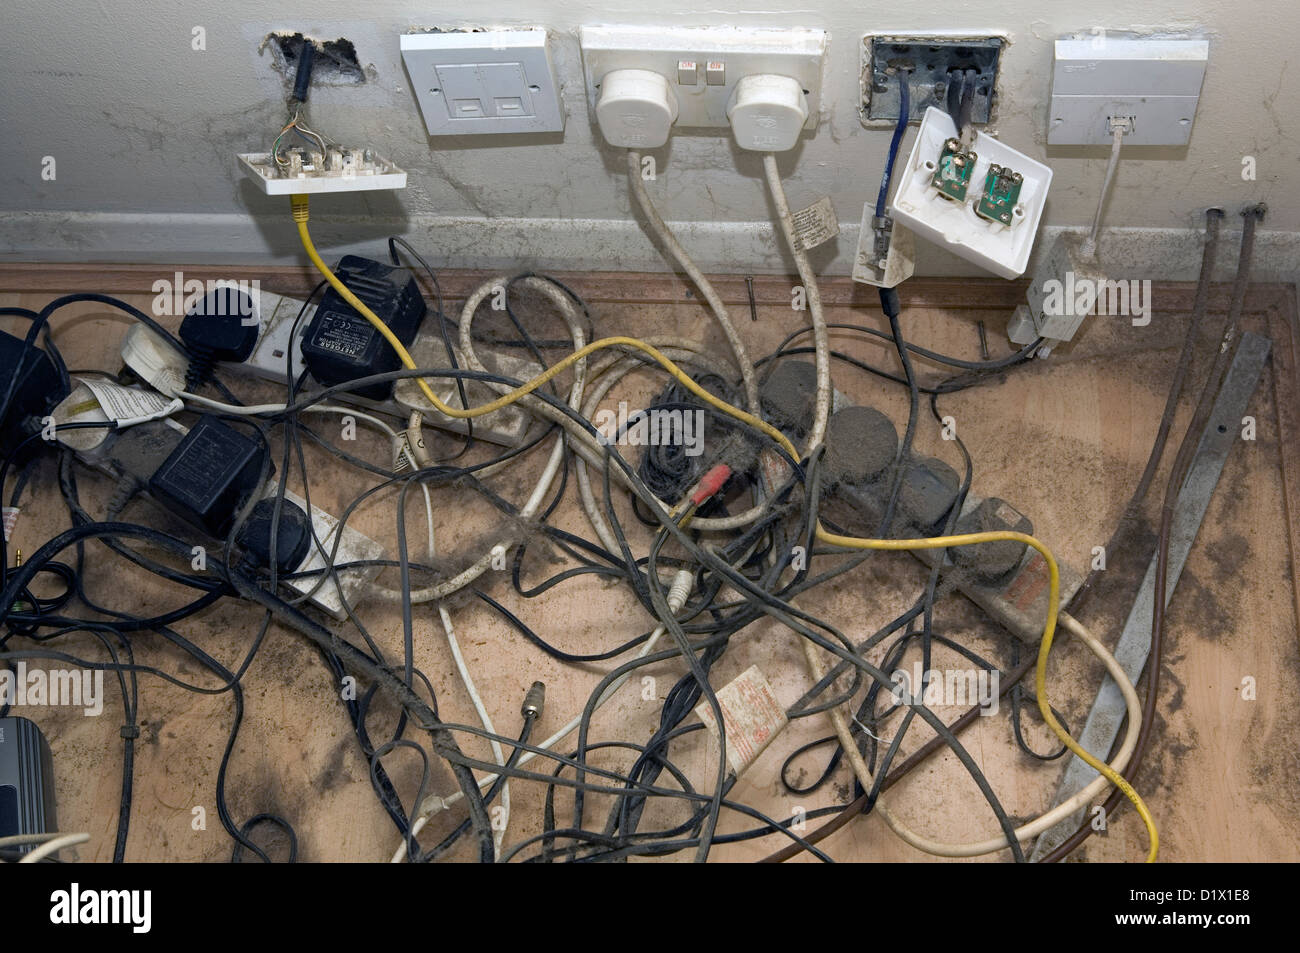 cables-de-alimentacion-de-polvo-y-los-enchufes-electricos-en-un-hogar-britanico-d1x1e8.jpg